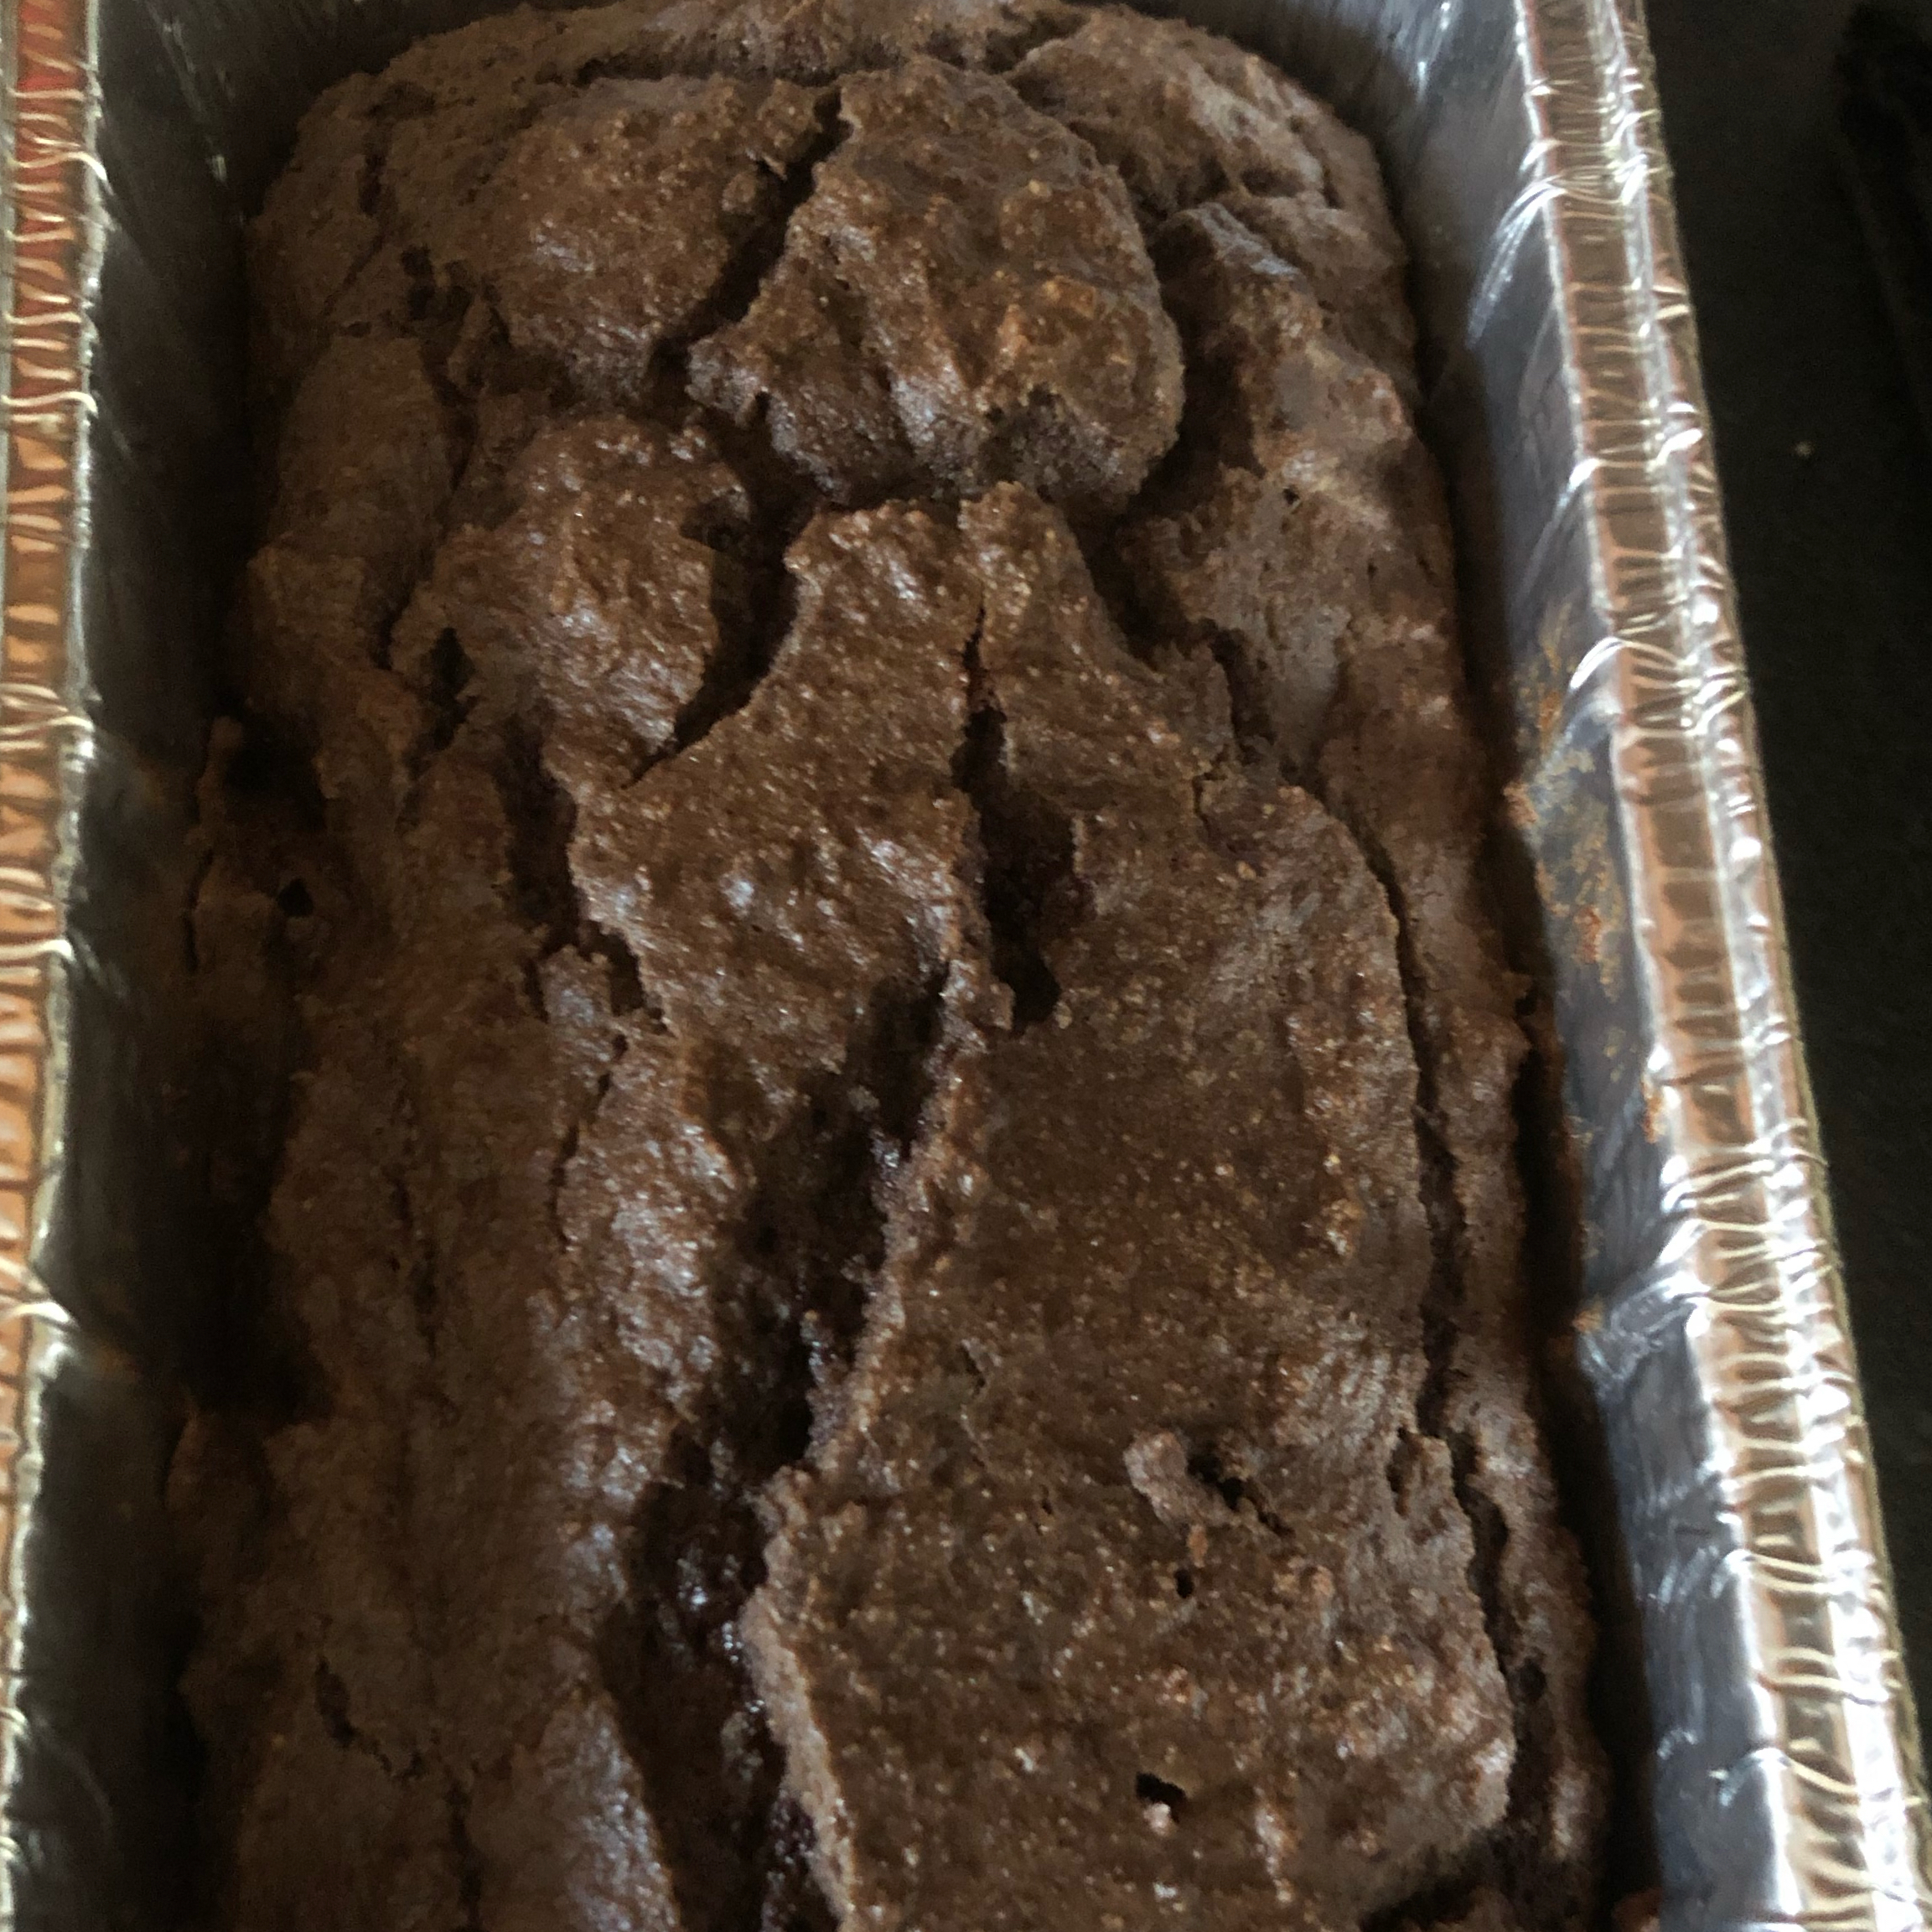 Chocolate Coconut Cake from King Arthur Flour®